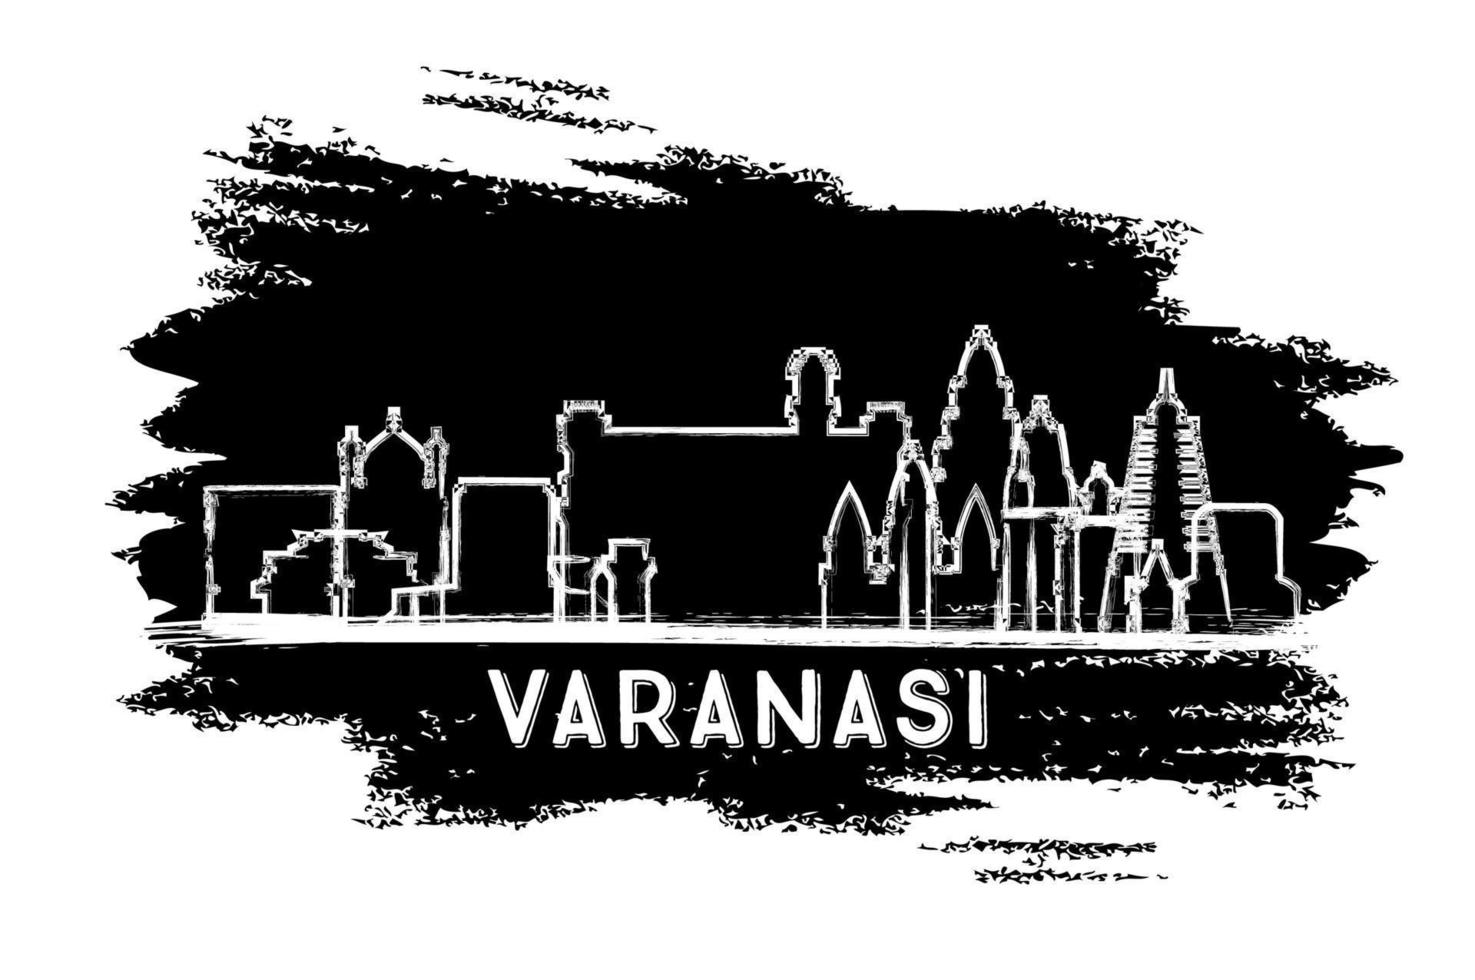 silueta del horizonte de la ciudad de varanasi india. boceto dibujado a mano. vector